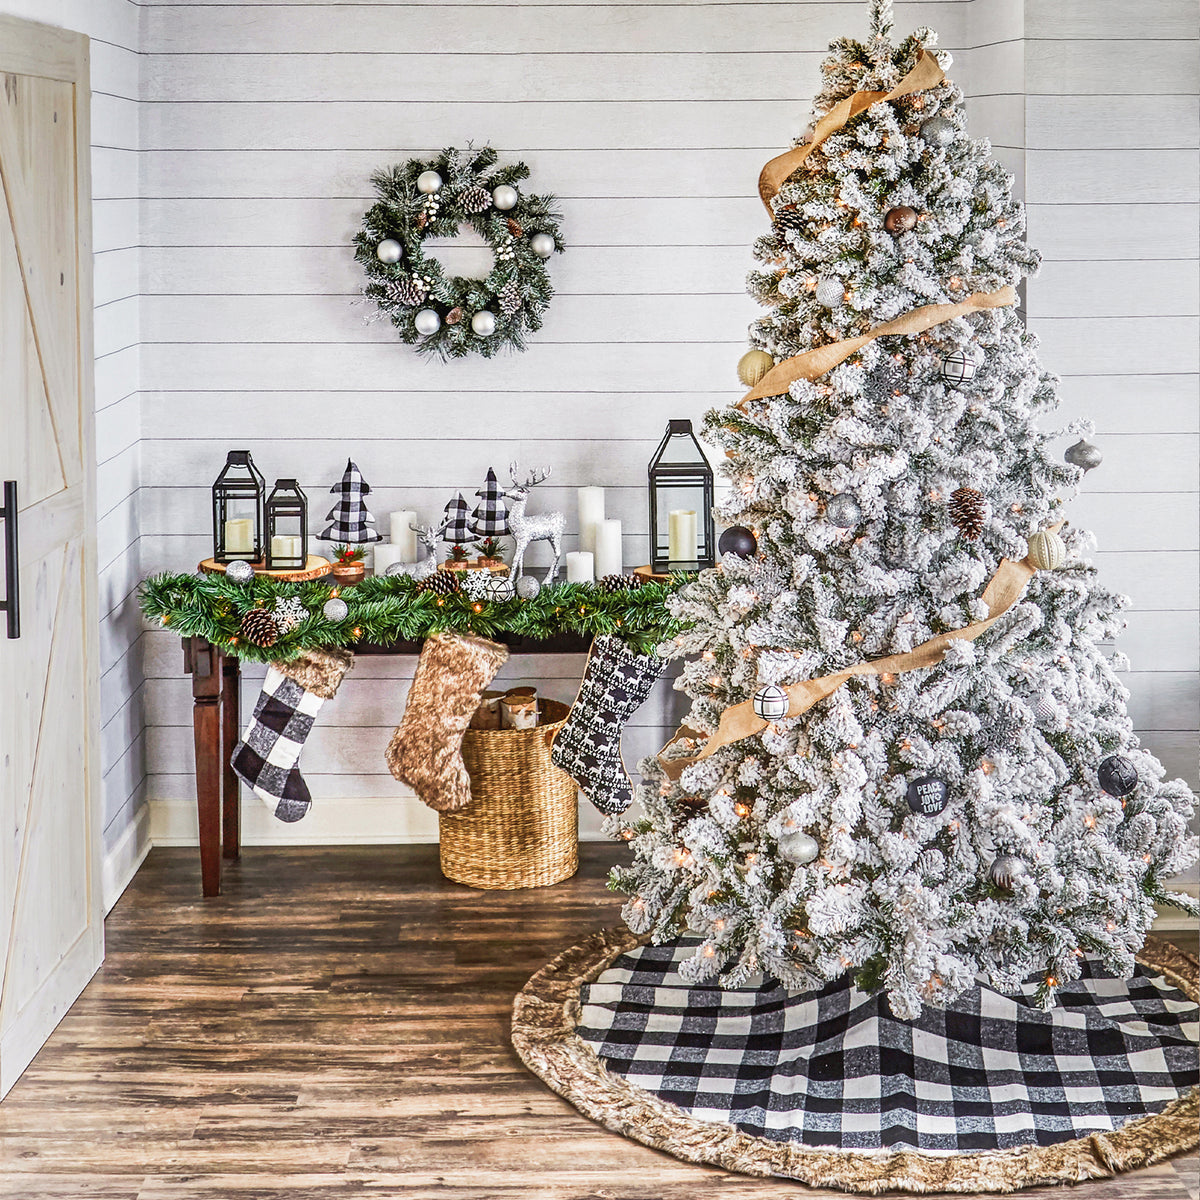 Black And White Plaid Christmas Tree